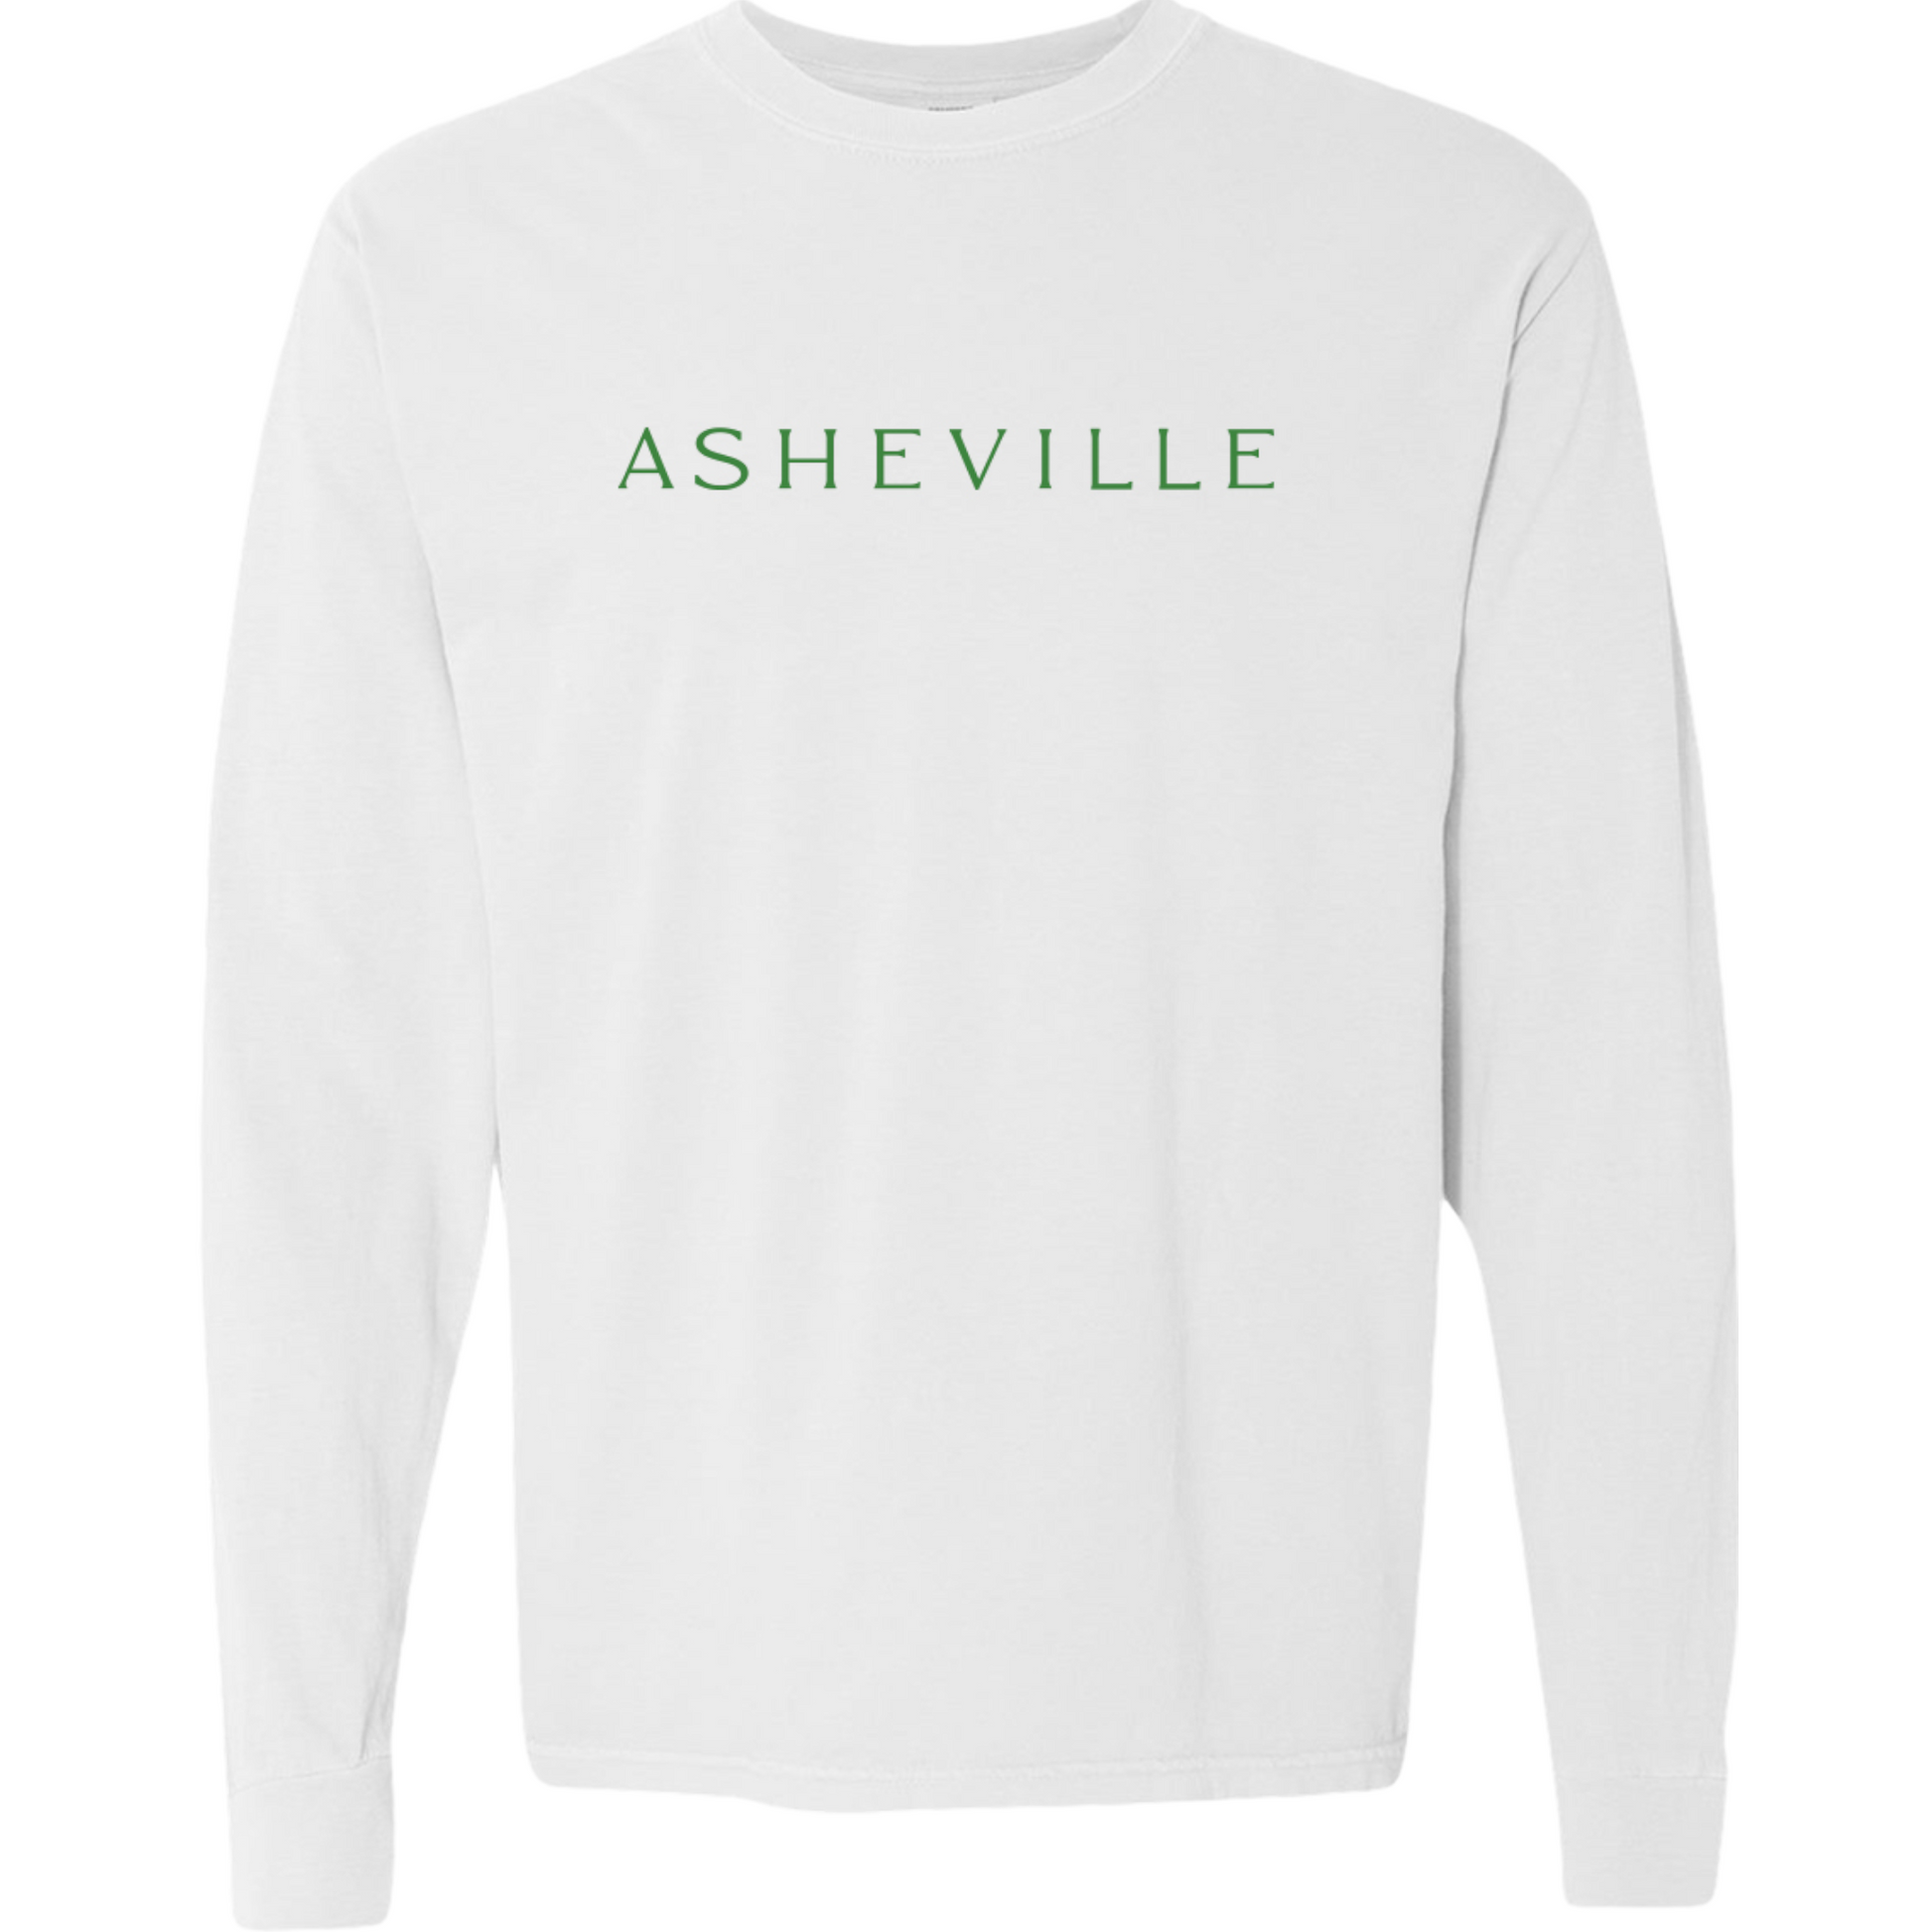 ASHEVILLE Cityscape Long Sleeved T-Shirt in White & Pisgah Green - The ASHEVILLE Co. TM